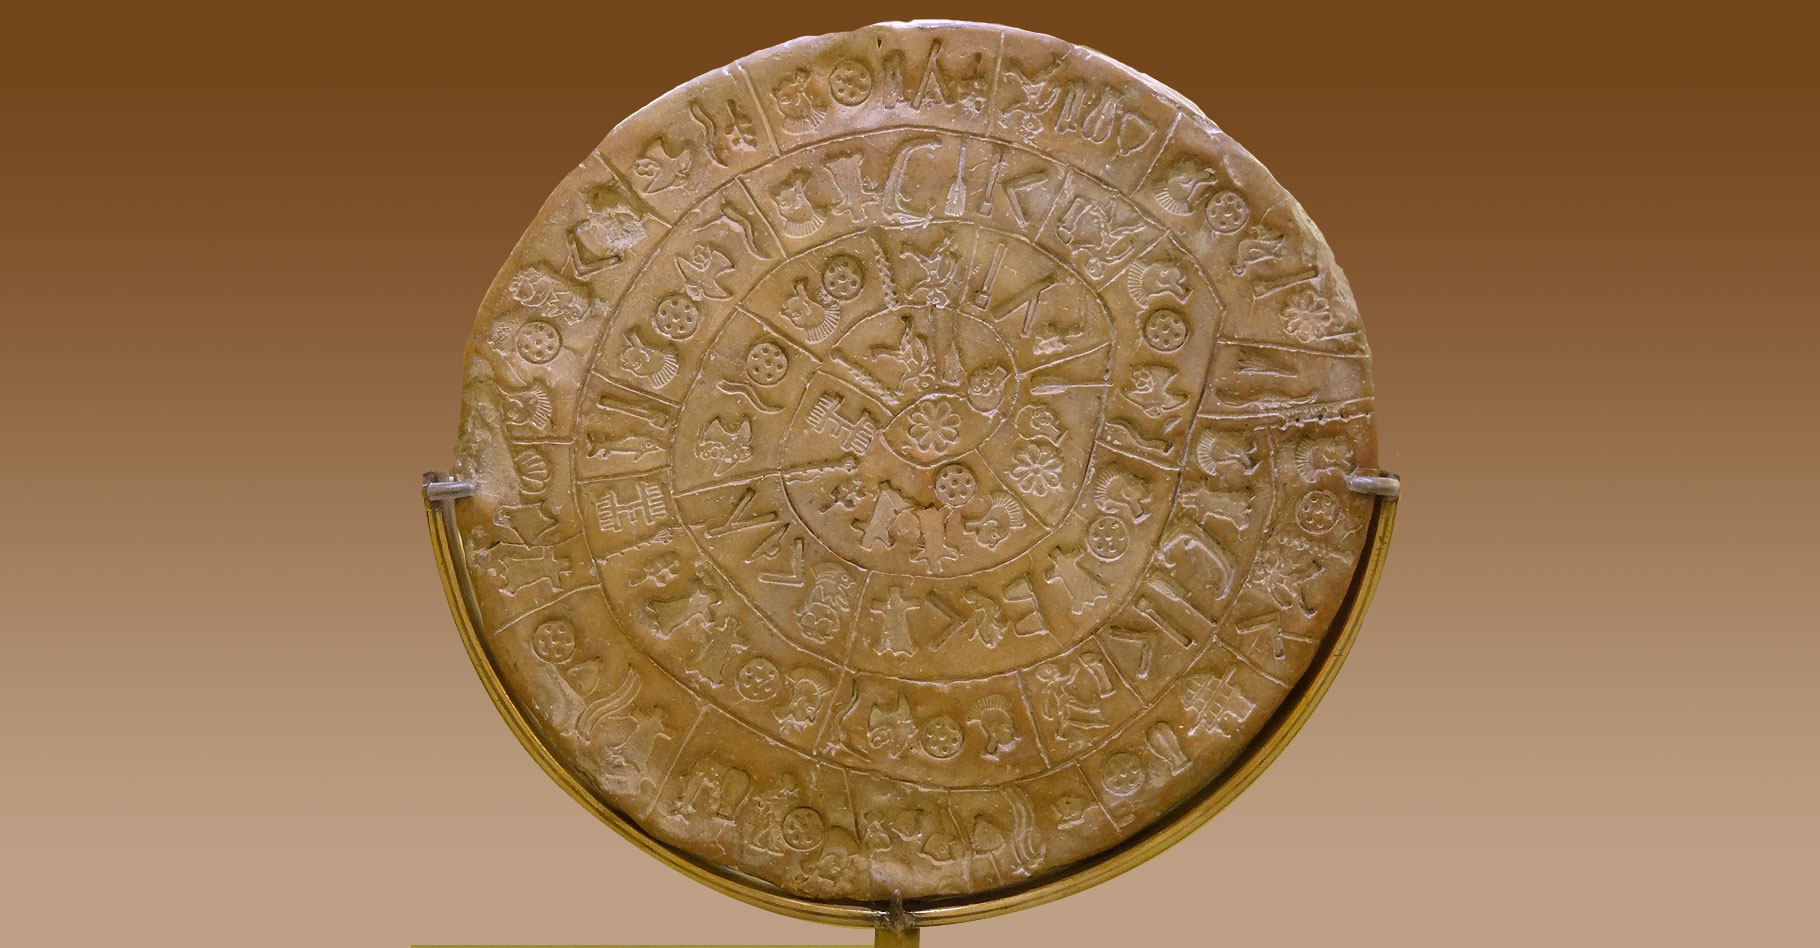 Le disque de Phaistos, un document astronomique archéologique ?